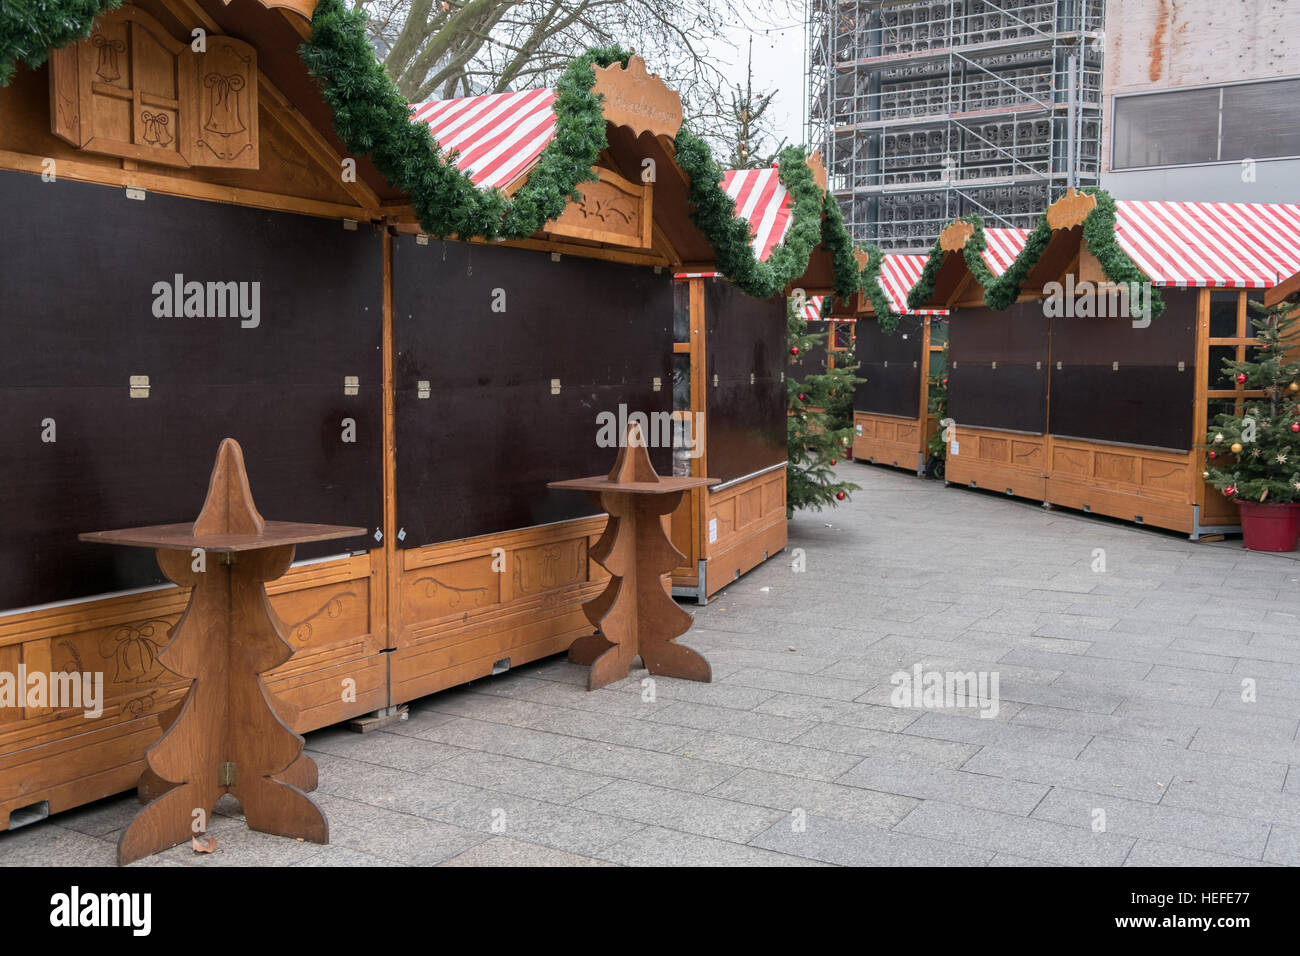 Marché fermé cale au Marché de Noël à Berlin, le jour après l'attaque terroriste. Banque D'Images